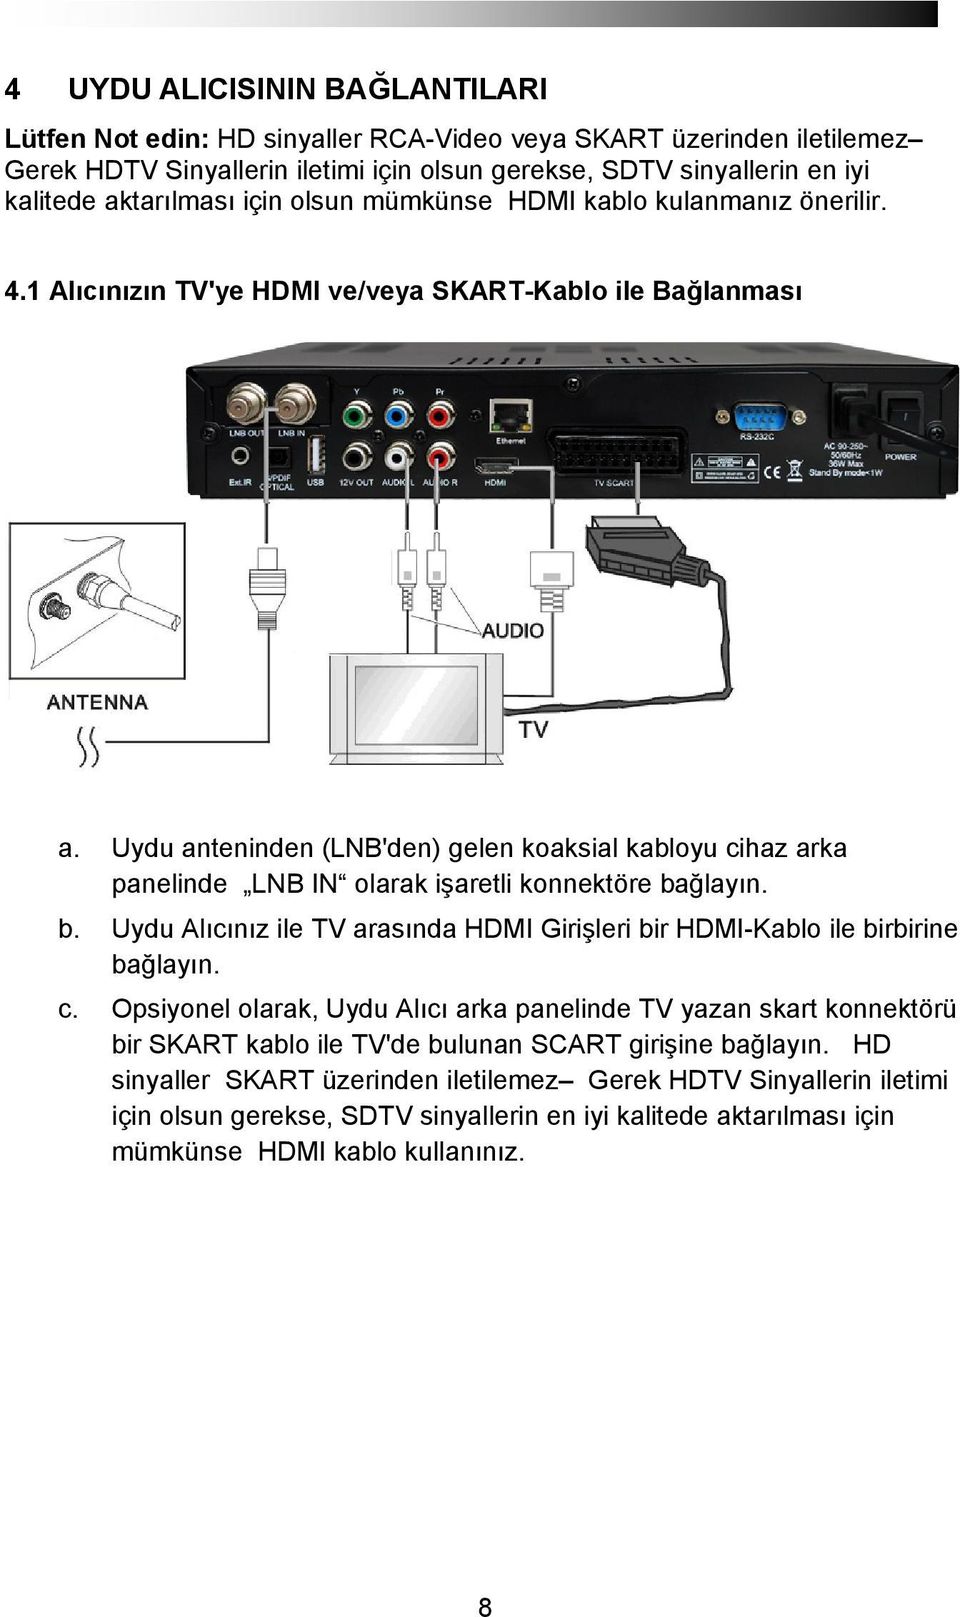 Uydu anteninden (LNB'den) gelen koaksial kabloyu cihaz arka panelinde LNB IN olarak işaretli konnektöre bağlayın. b. Uydu Alıcınız ile TV arasında HDMI Girişleri bir HDMI-Kablo ile birbirine bağlayın.